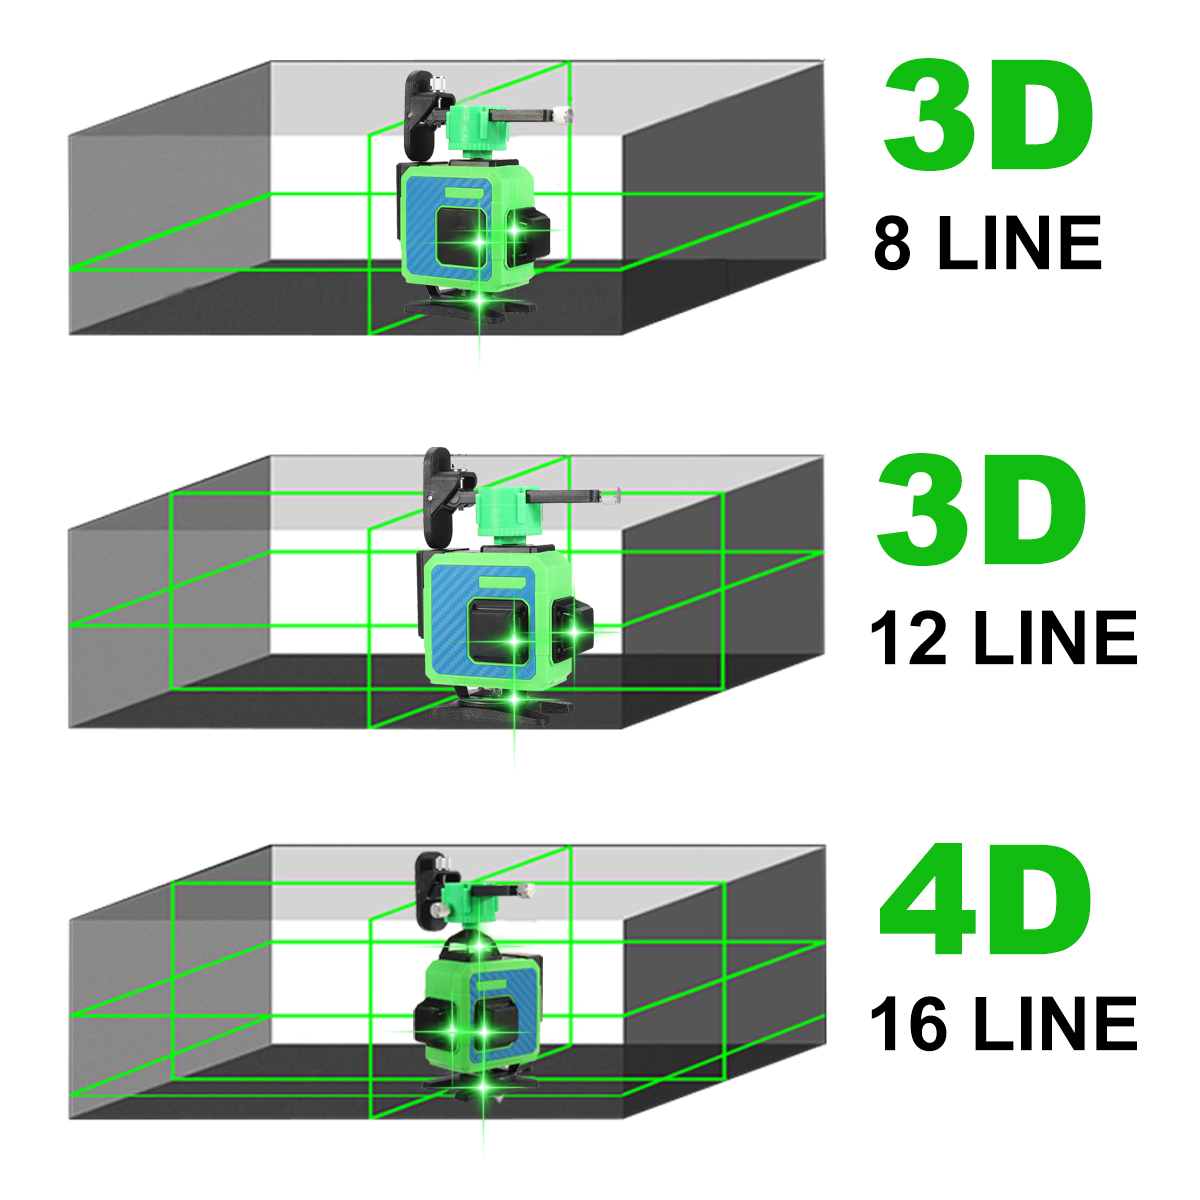 81216-Line-4D-Green-Laser-Level-360deg-Self-Leveling-Measure-Tool-Horizontal-Vertical-1953101-11